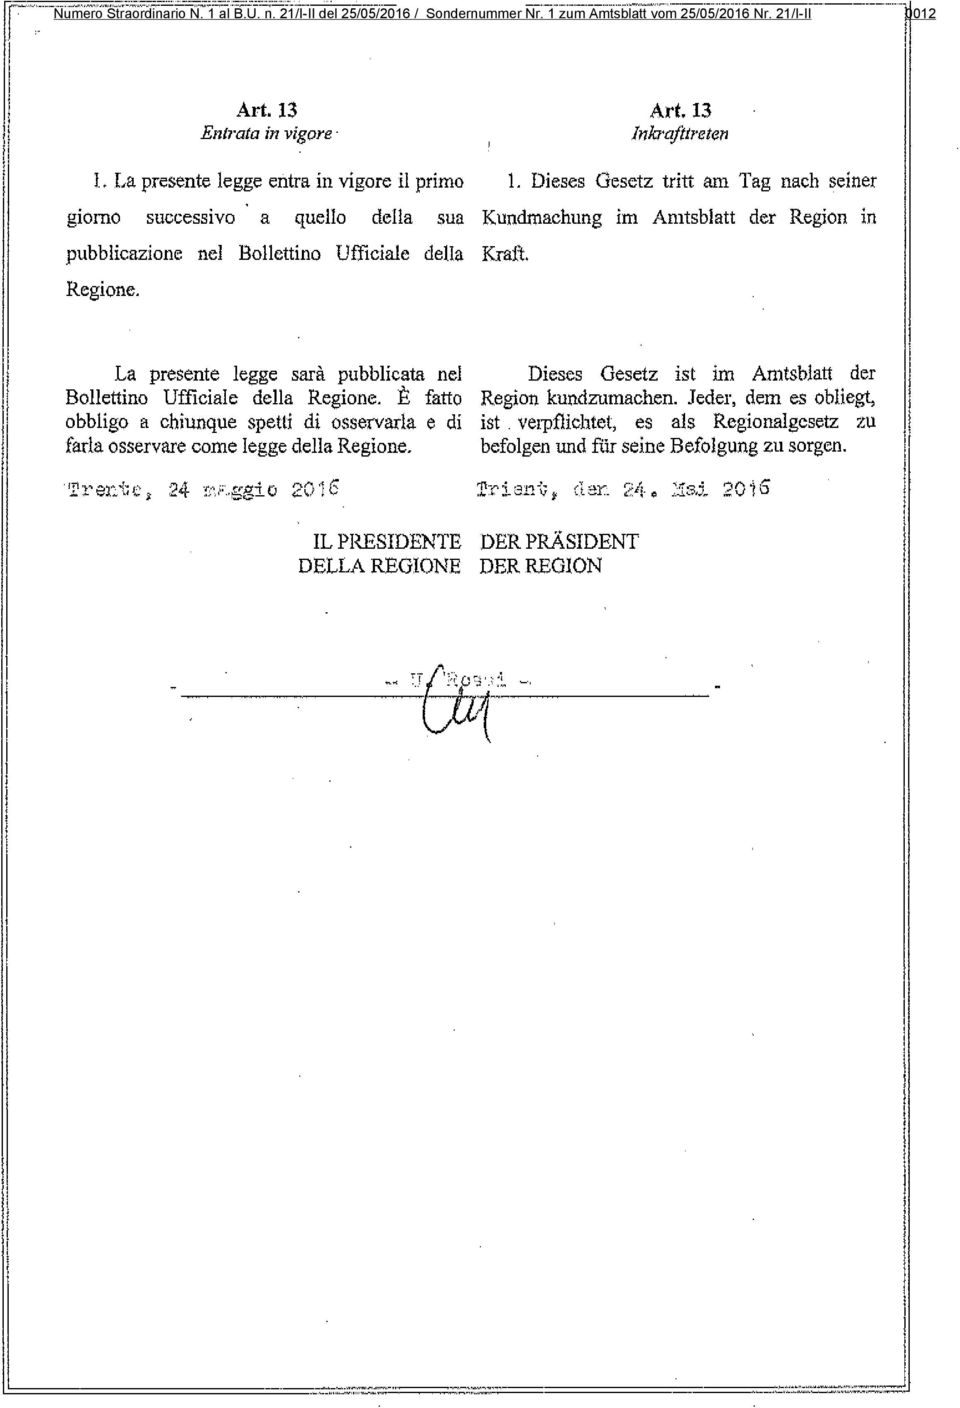 Dieses Gesetz tritt am Tag nach seiner giorno successivo a quello della sua Kundmaehung im Amtsblatt der Region in pubblicazione nel Bollettino Ufficiale della Kraft. Regione.